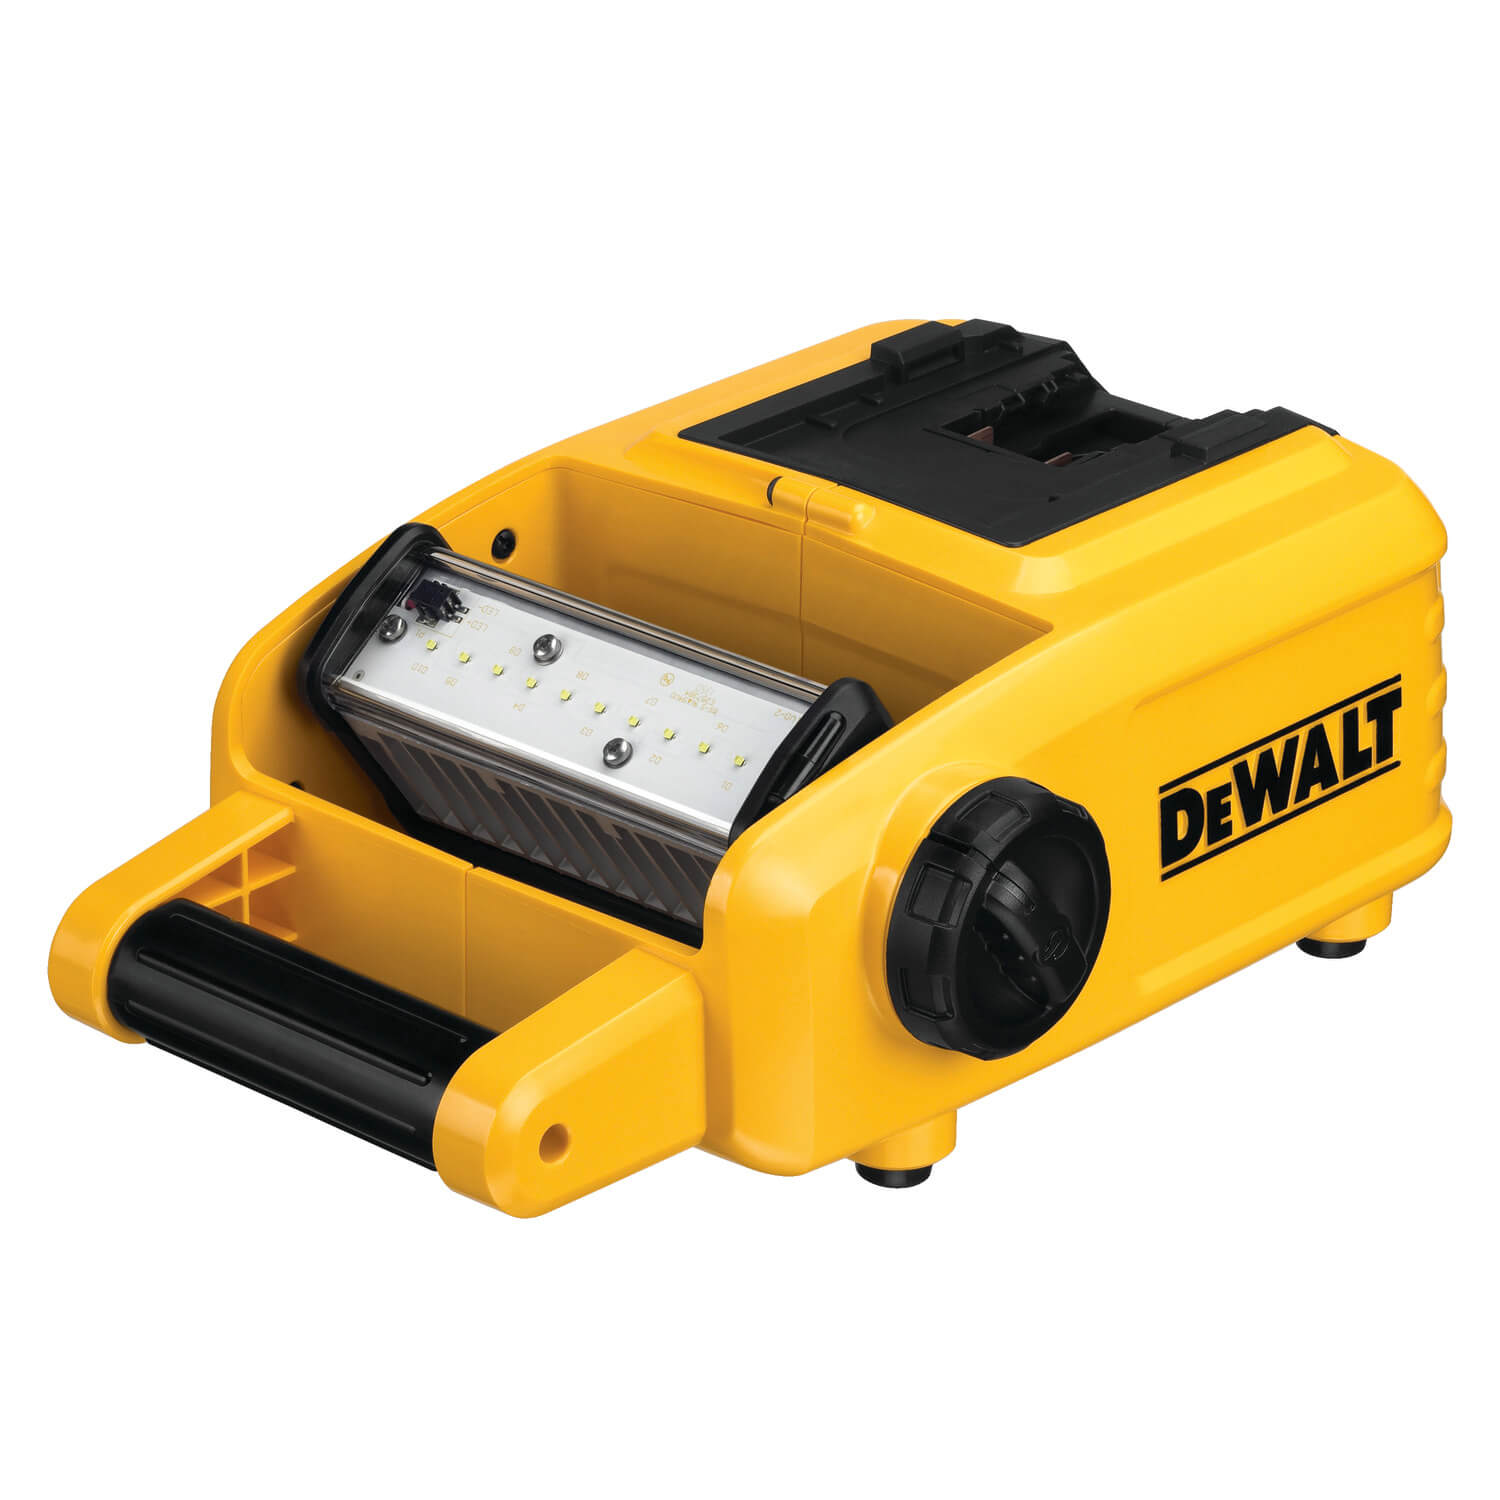 DEWALT DCL061 18V/20V MAX Cordless/Corded LED Worklight - wise-line-tools